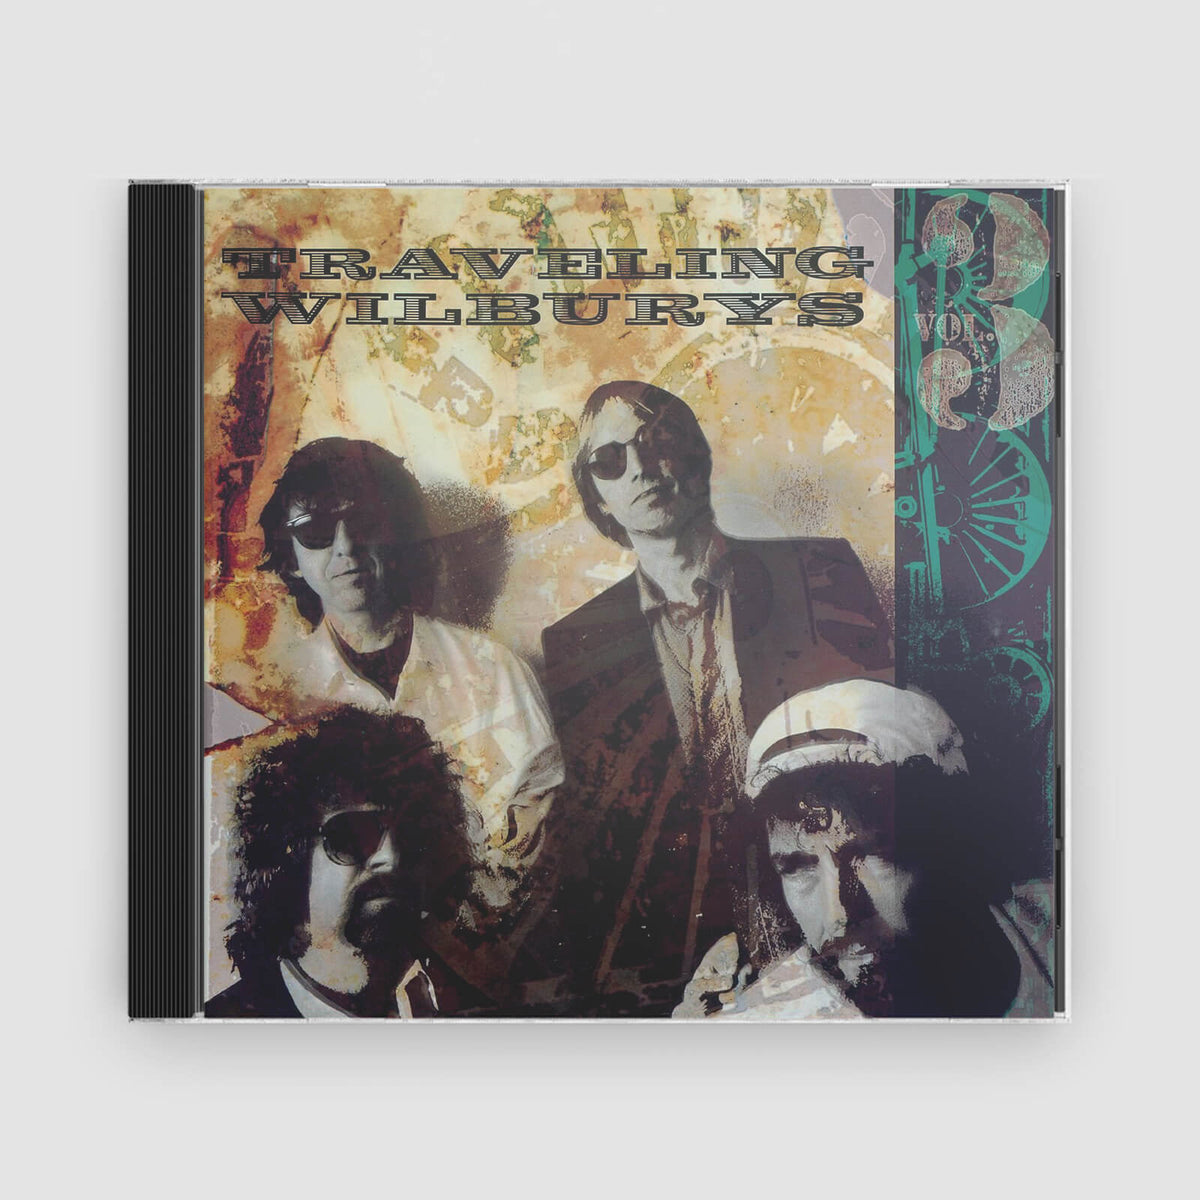 The Traveling Wilburys : The Traveling Wilburys, Vol. 3